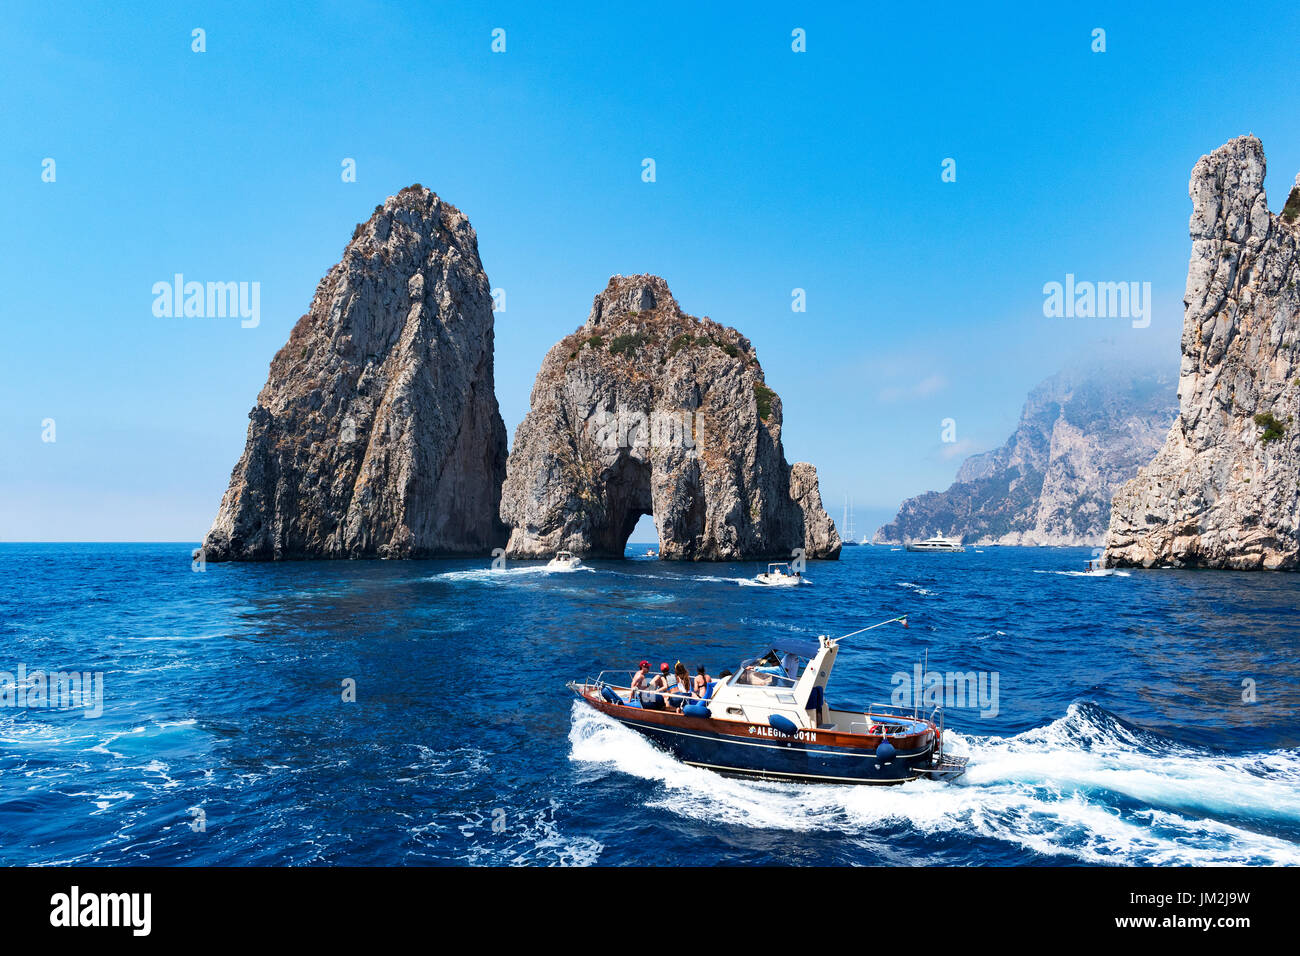 Bateaux de croisière autour de la faraglioni dans la mer tyrrhénienne, le long de la côte de l'île de Capri, Italie. Banque D'Images